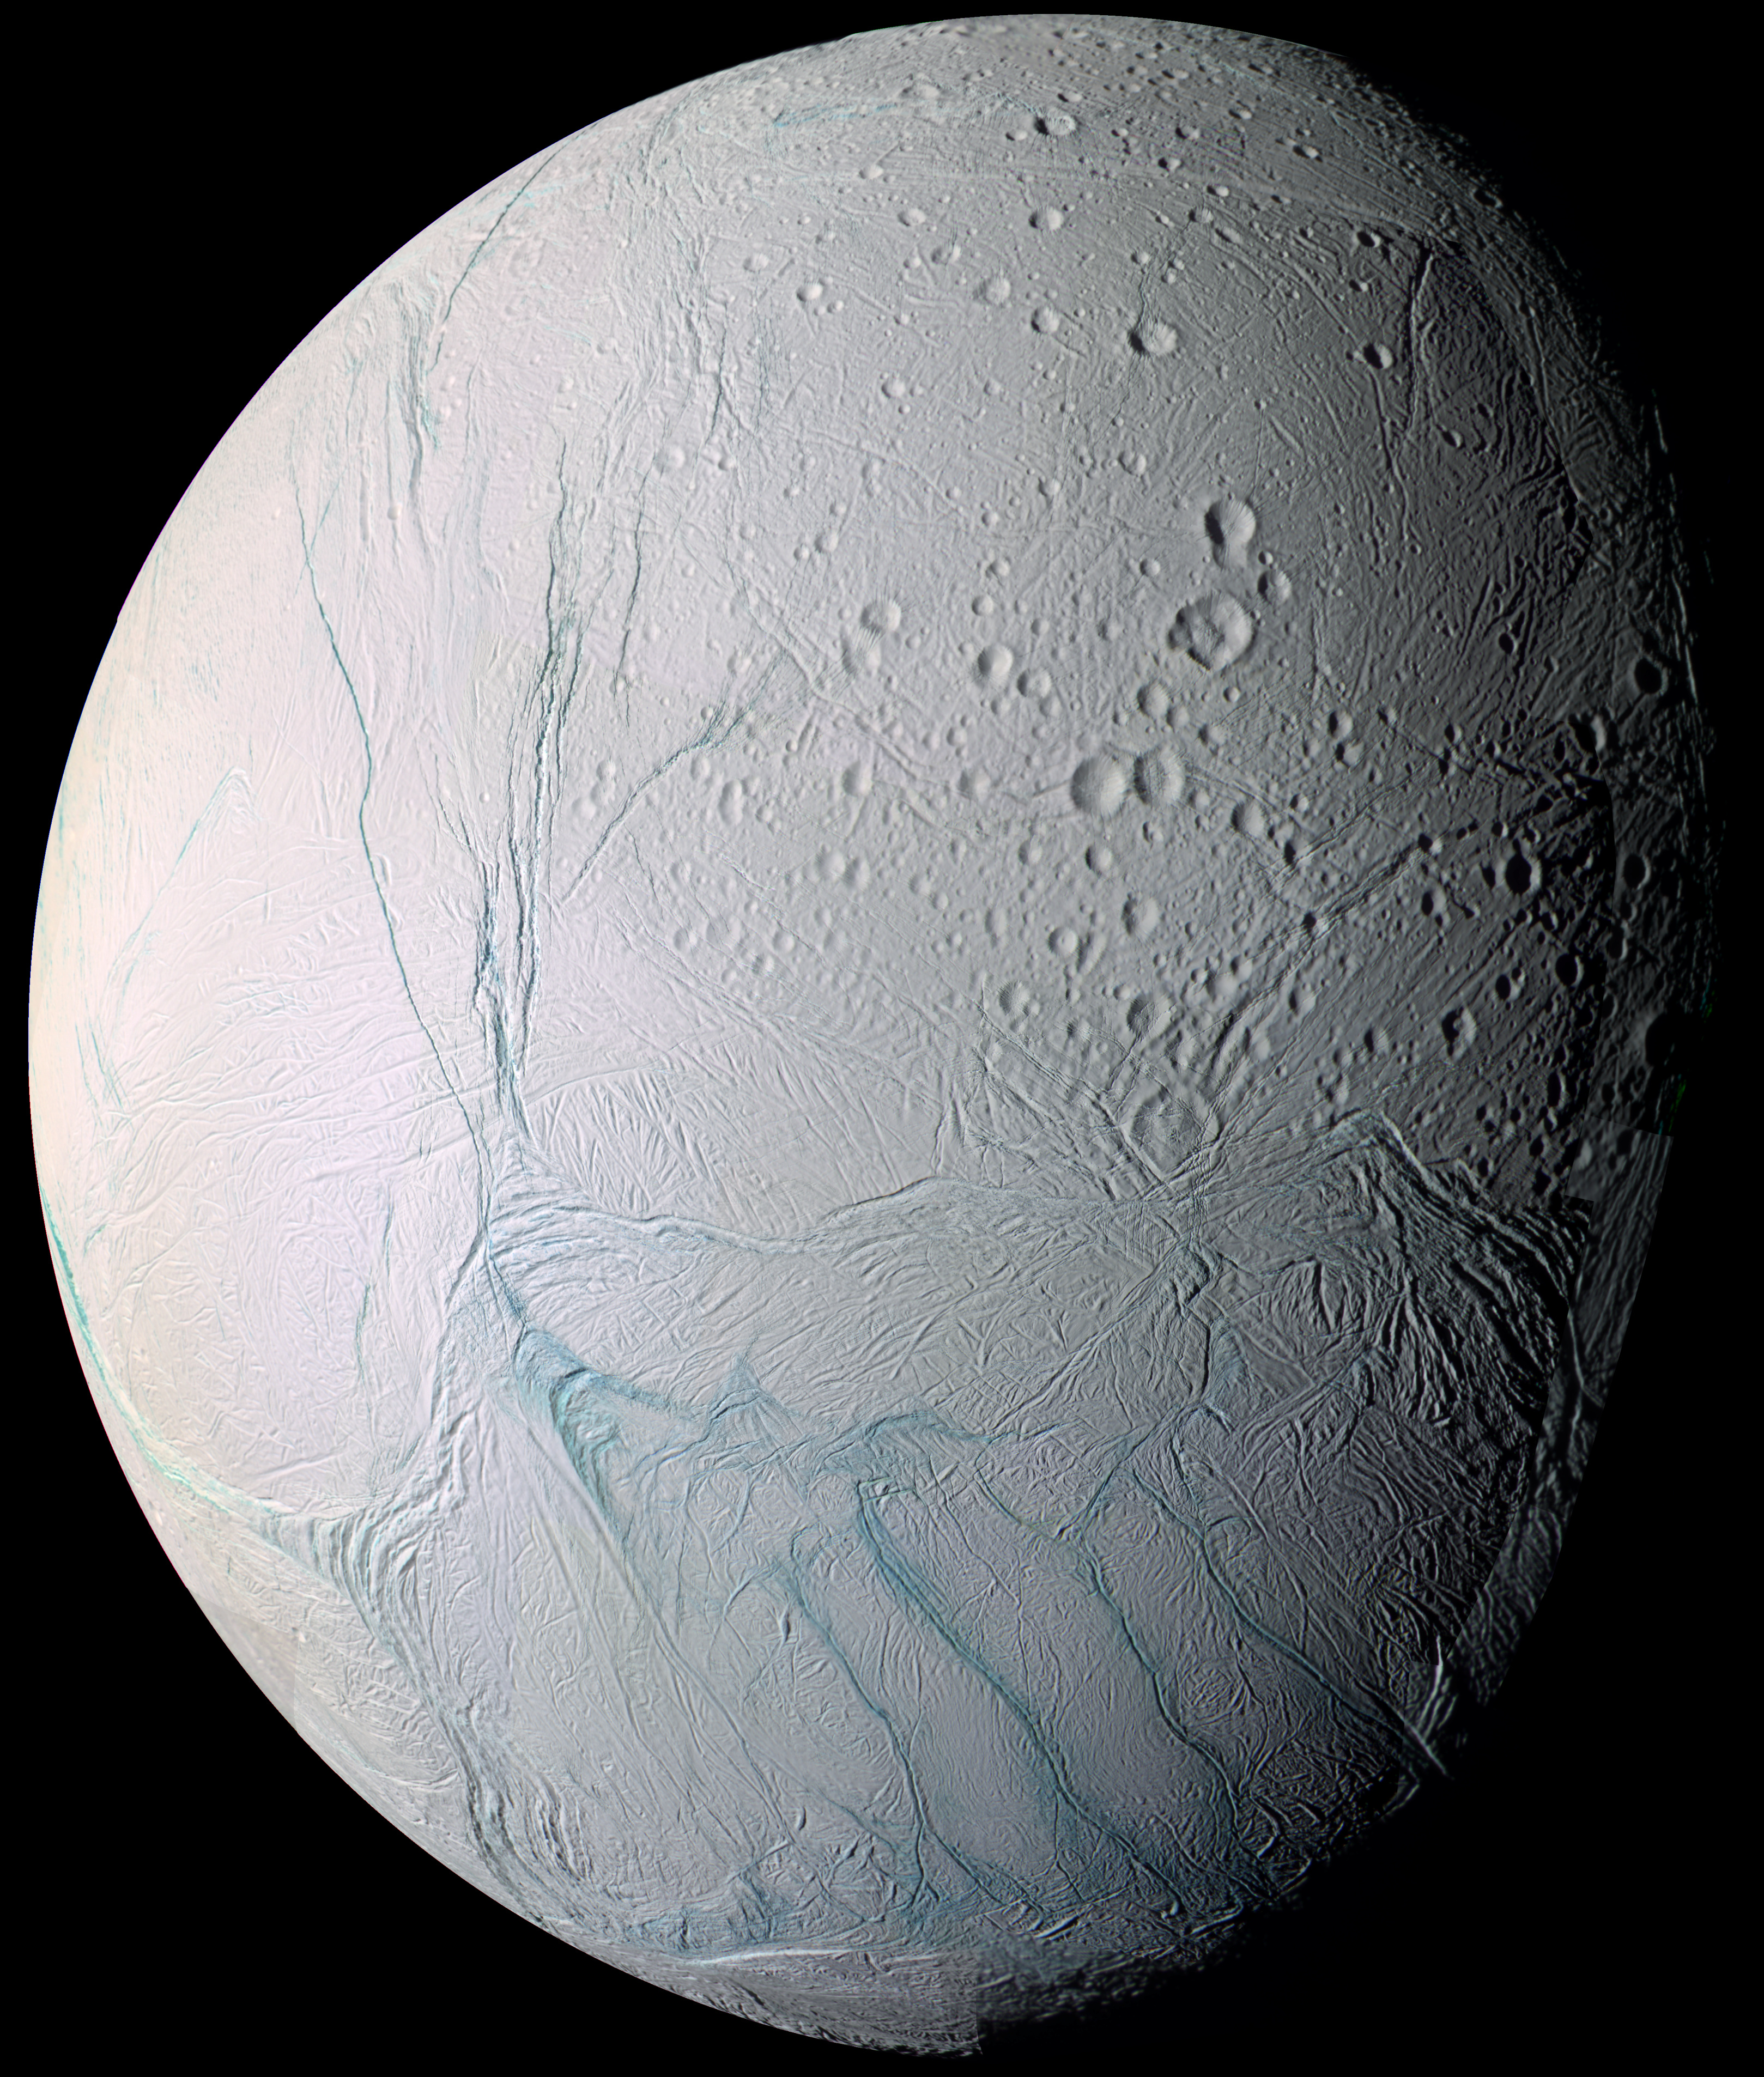 Encélado (satélite) - Wikipedia, la enciclopedia libre